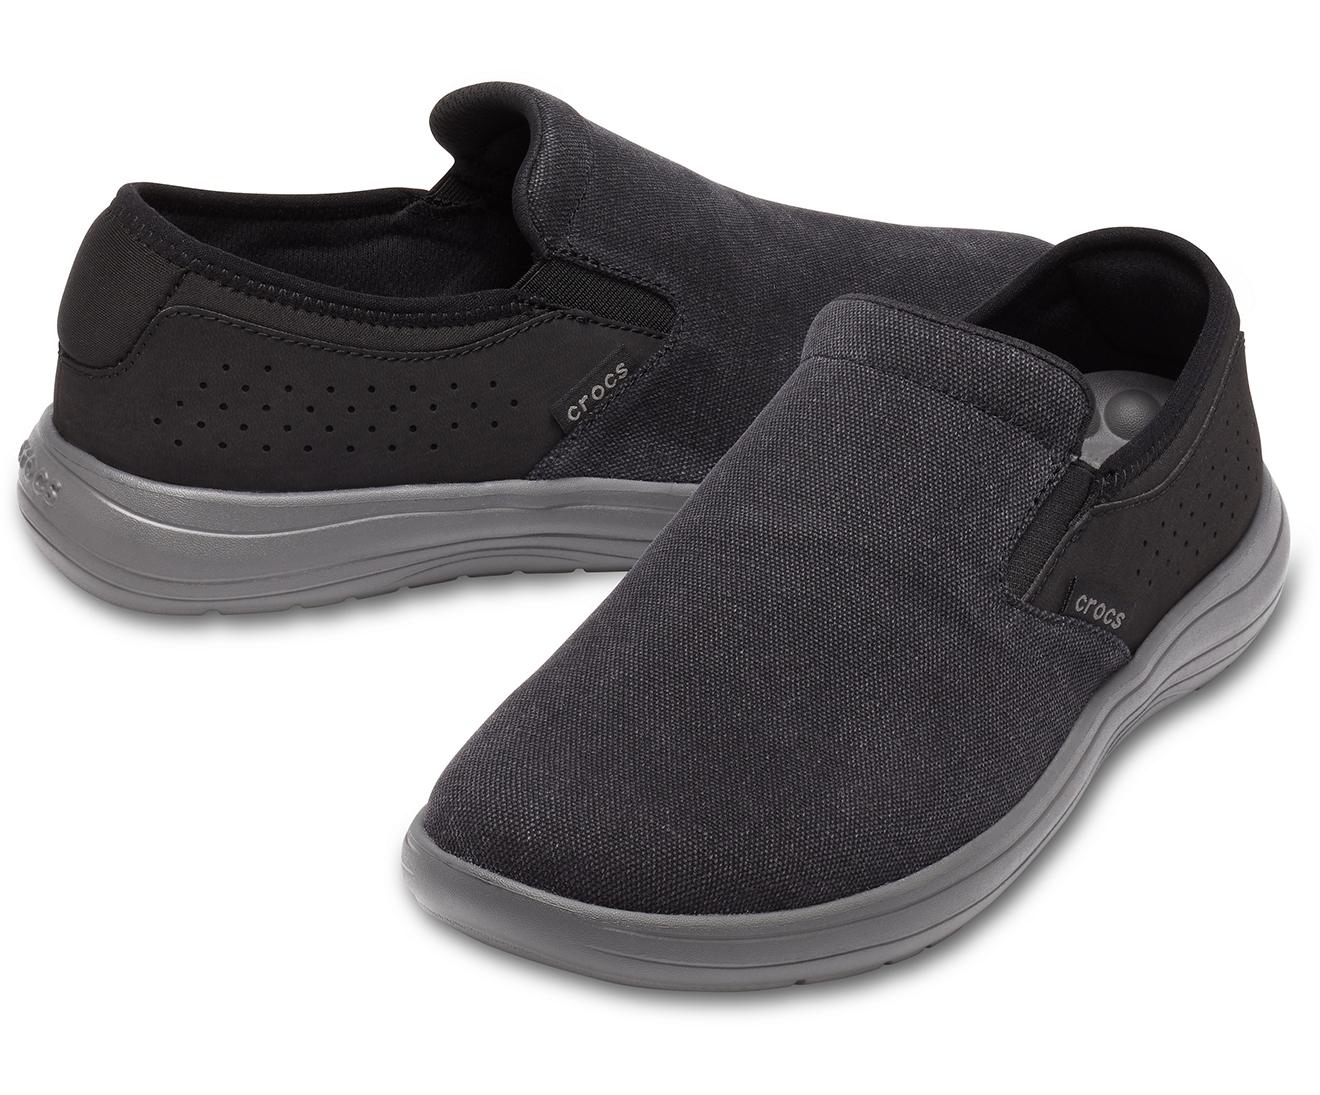 Crocs™ Reviva Canvas Slip-on in Black/Slate Grey (Gray) for Men - Lyst